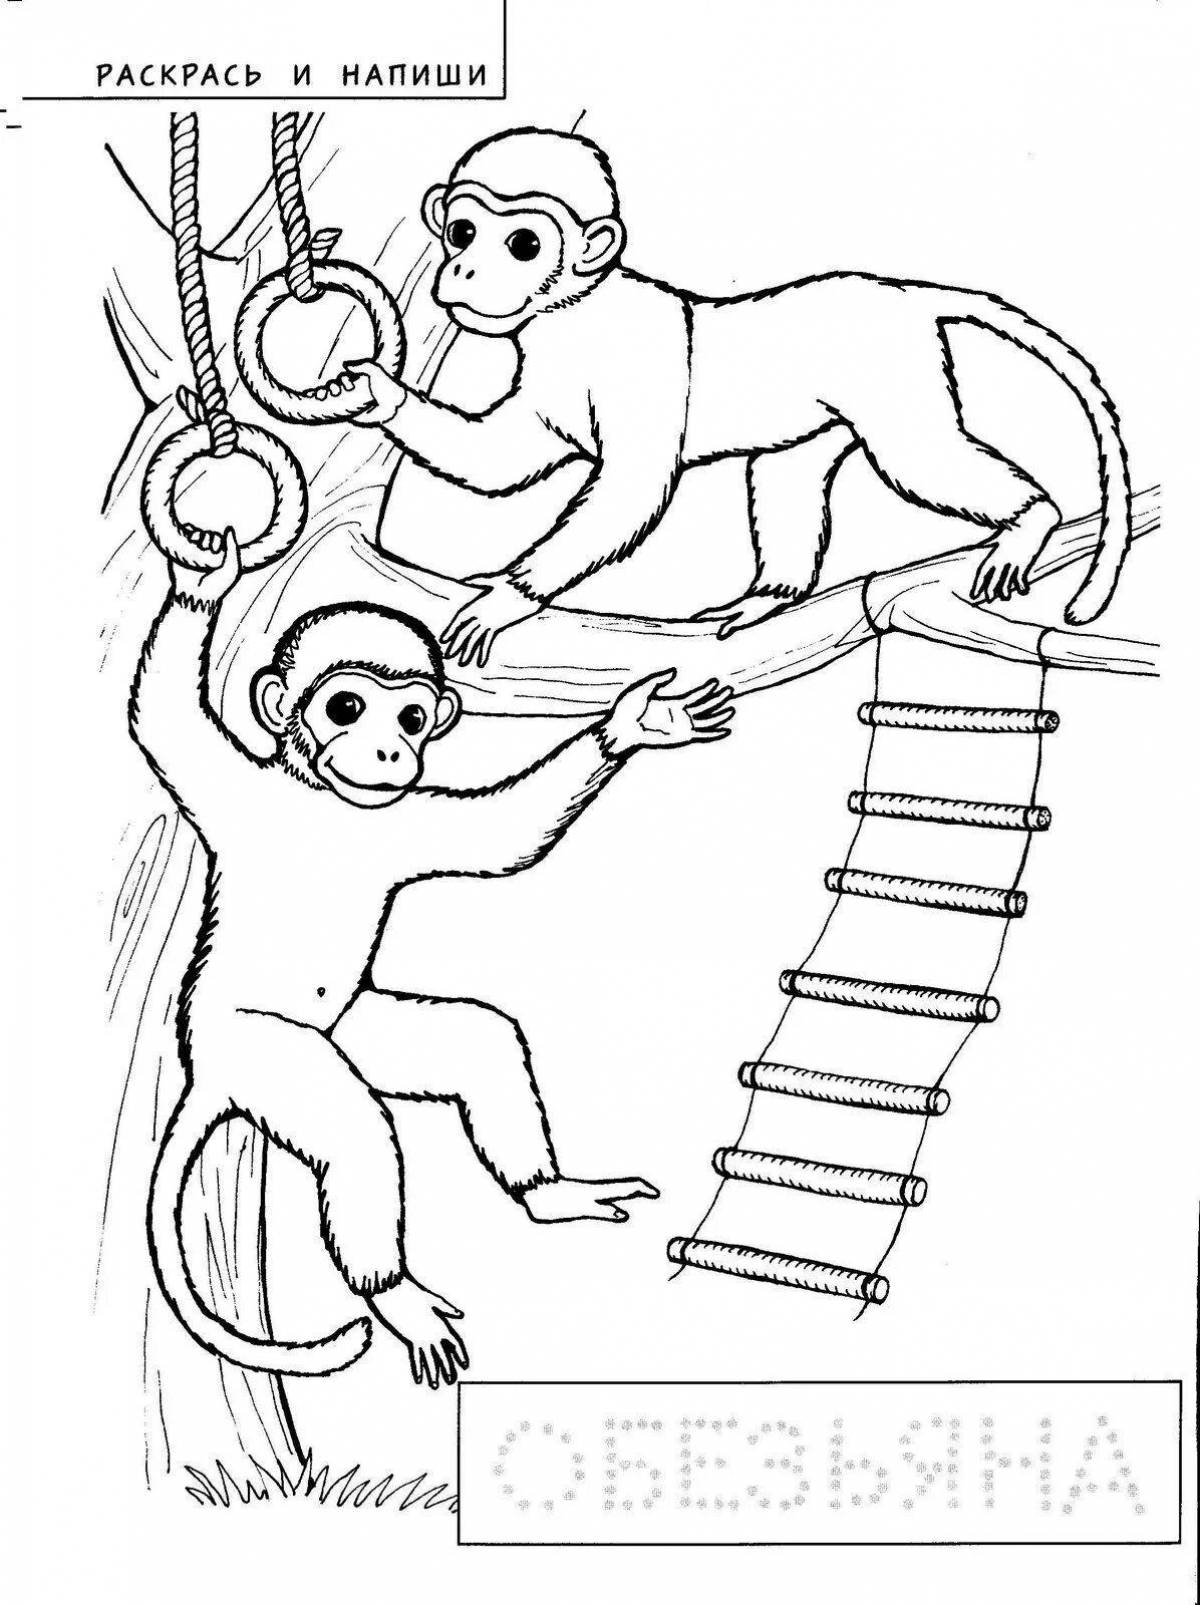 Рисунок про обезьянку житков. Раскраска к произведению про обезьянку. Про обезьянку Житков раскраска. Раскраска к произведению Житкова про обезьянку. Иллюстрация к произведению про обезьянку.